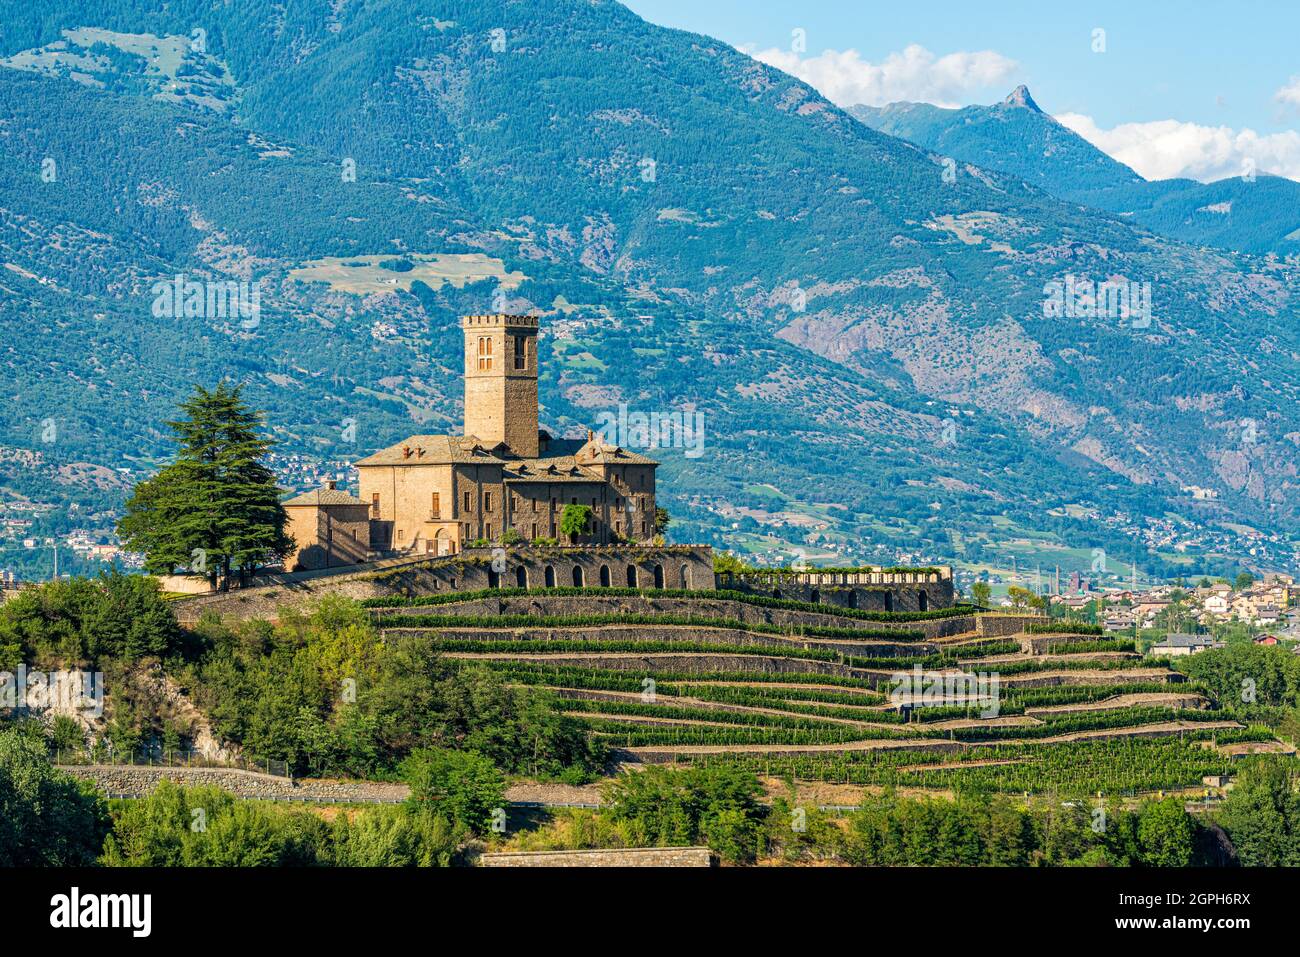 Le plus grand château de Sarre (Castello Reale di Sarre), dans la vallée d'Aoste, au nord de l'Italie. Banque D'Images